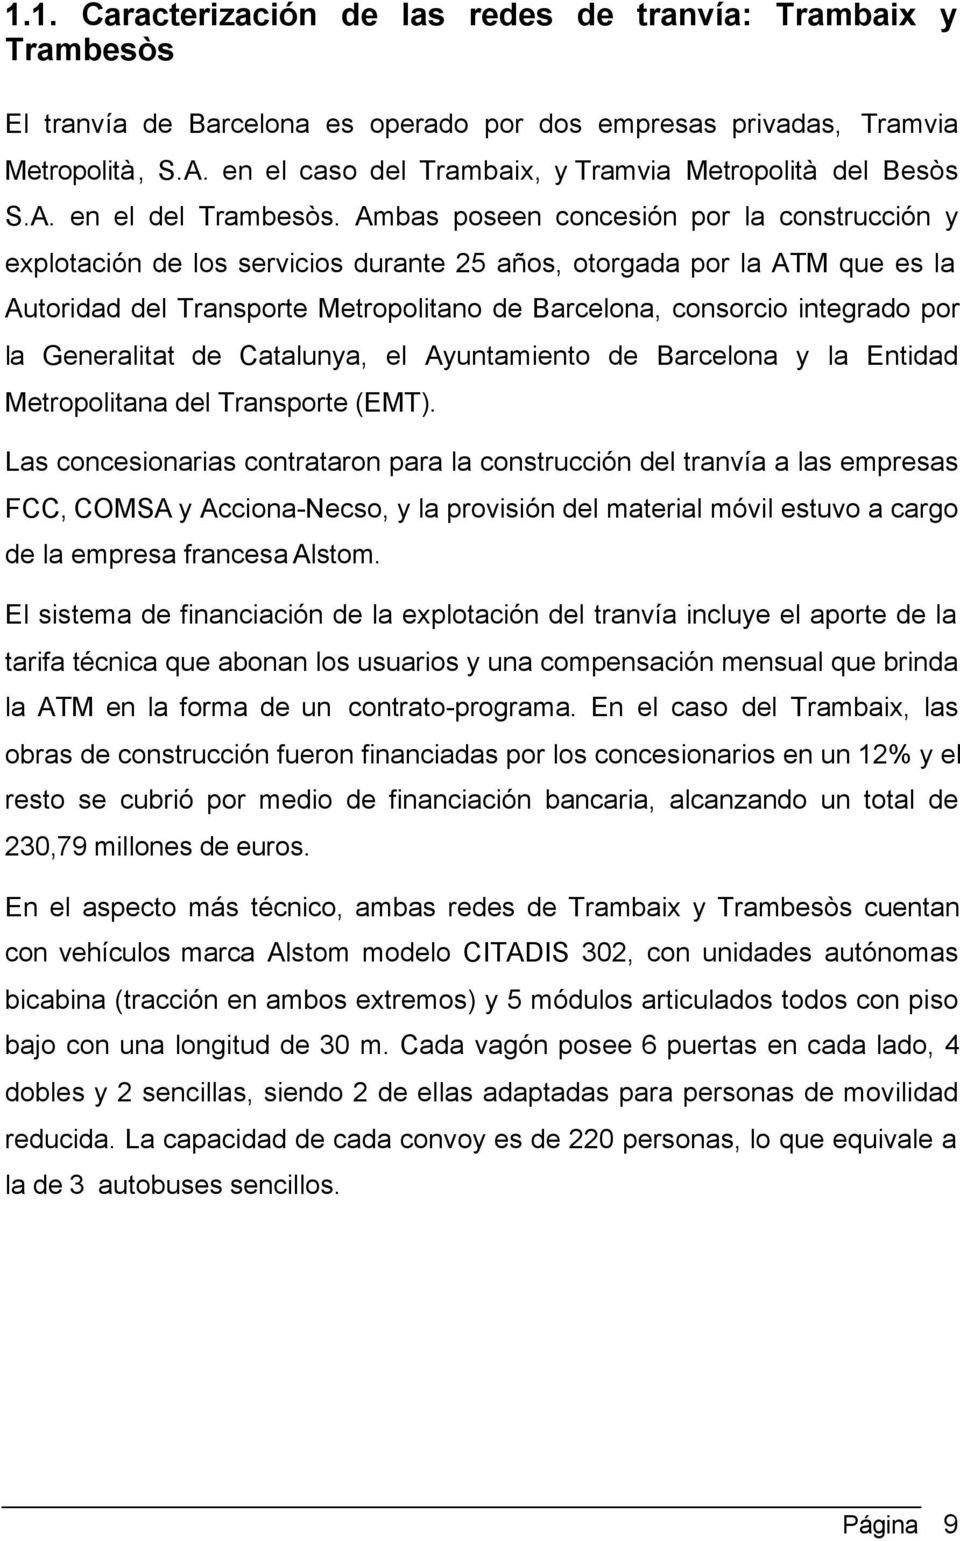 Ambas poseen concesión por la construcción y explotación de los servicios durante 25 años, otorgada por la ATM que es la Autoridad del Transporte Metropolitano de Barcelona, consorcio integrado por